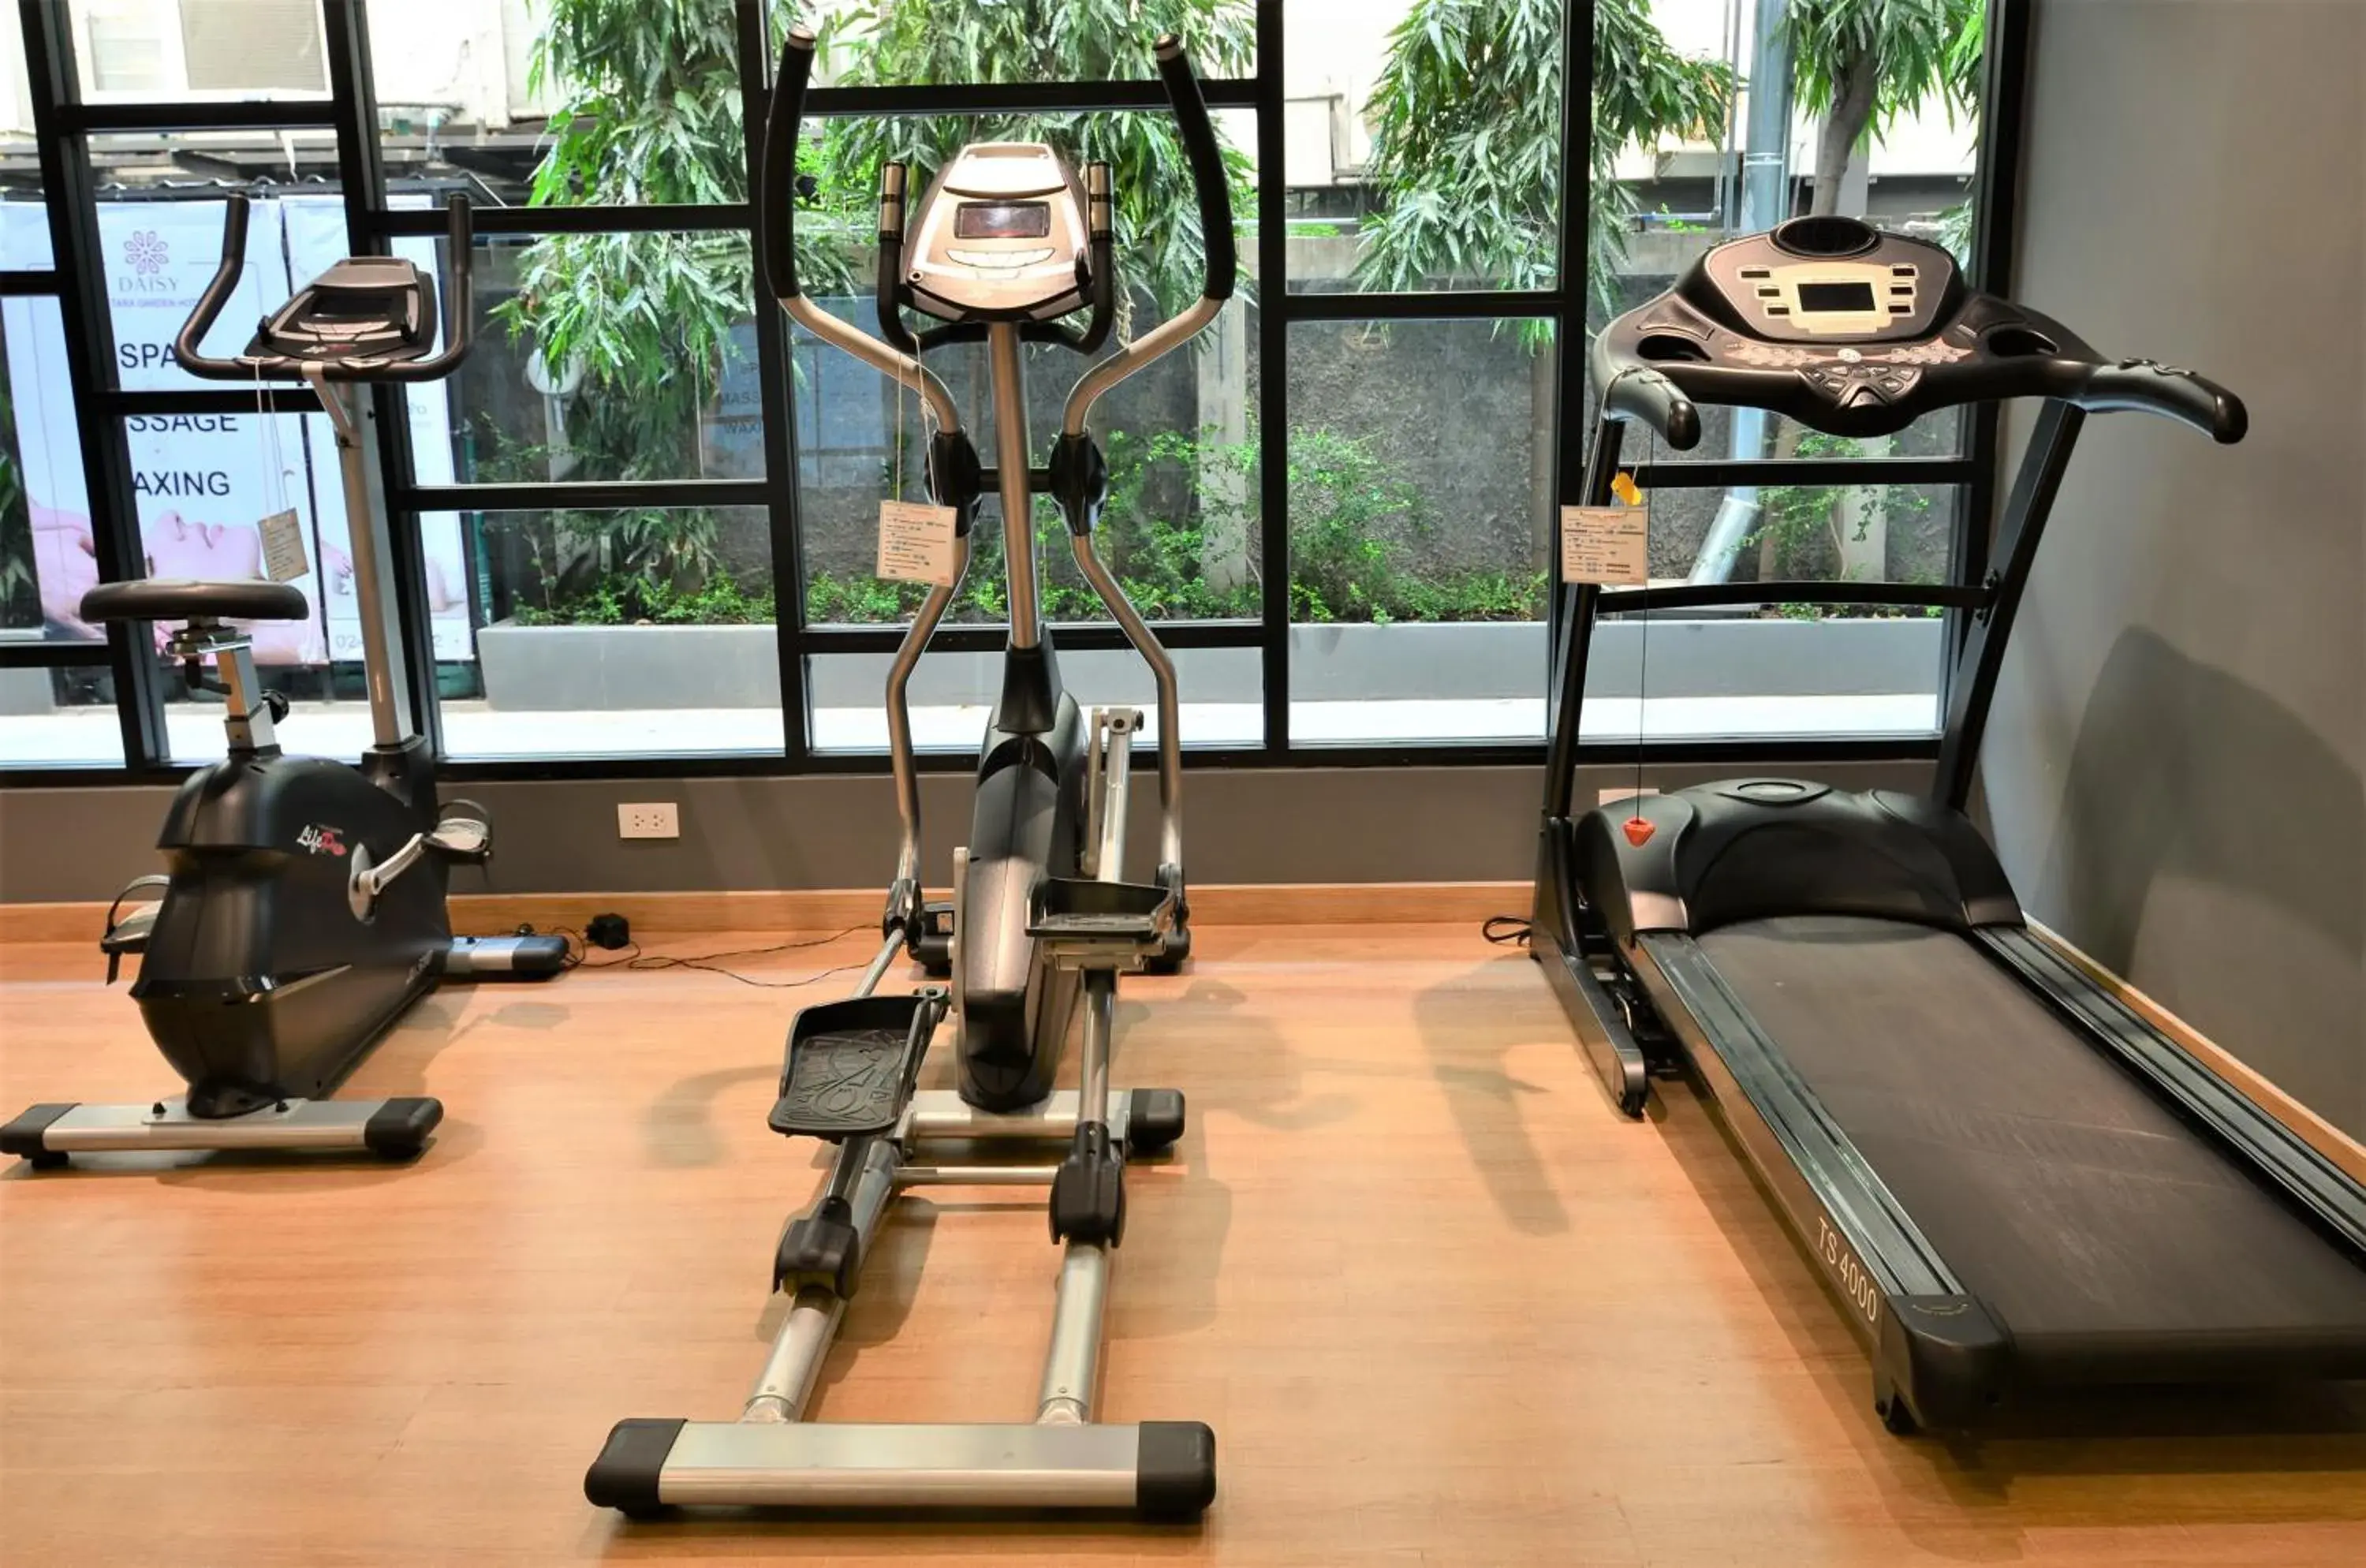 Fitness centre/facilities, Fitness Center/Facilities in Tara Garden Hotel